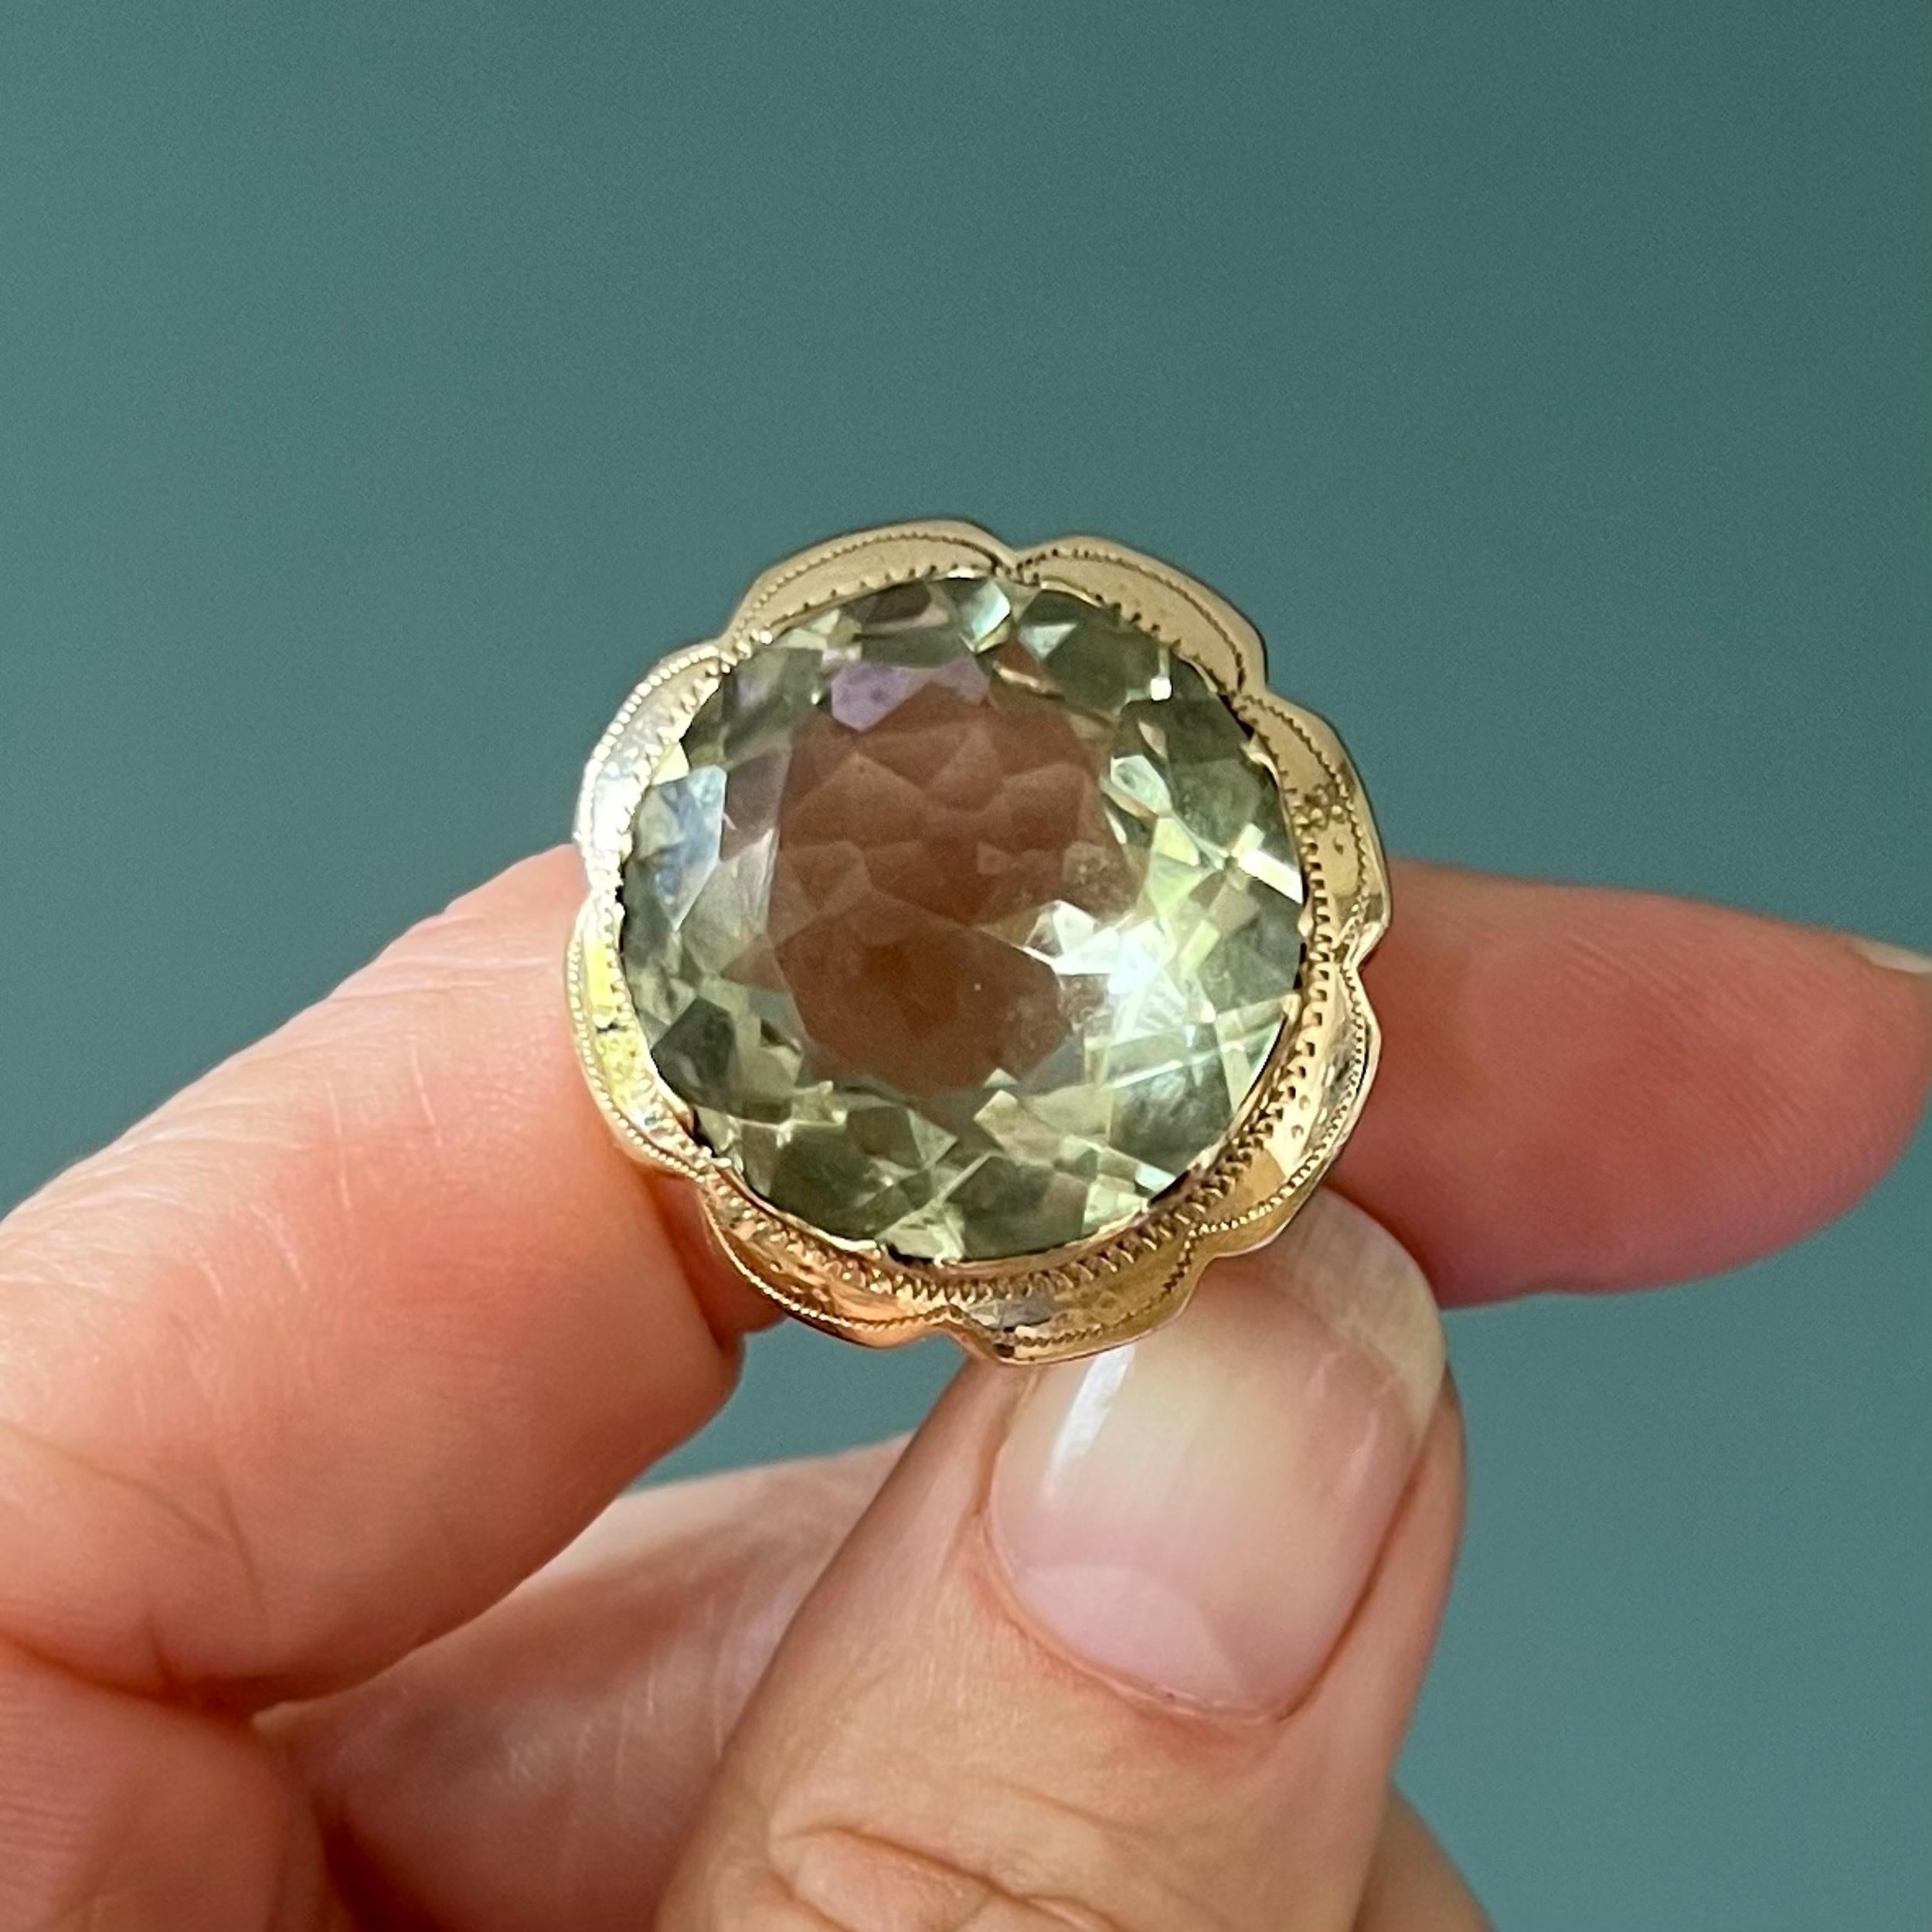 Ein Vintage-Ring aus 14 Karat Gold mit einem grünen Quarzstein. Das Gold hat einen hübschen gewellten Rand mit einer Fantasiegravur. Der Quarz ist einfach herrlich, er ist sehr klar und hell in der Farbe. Die Fassung dieses klobigen Rings hat ein